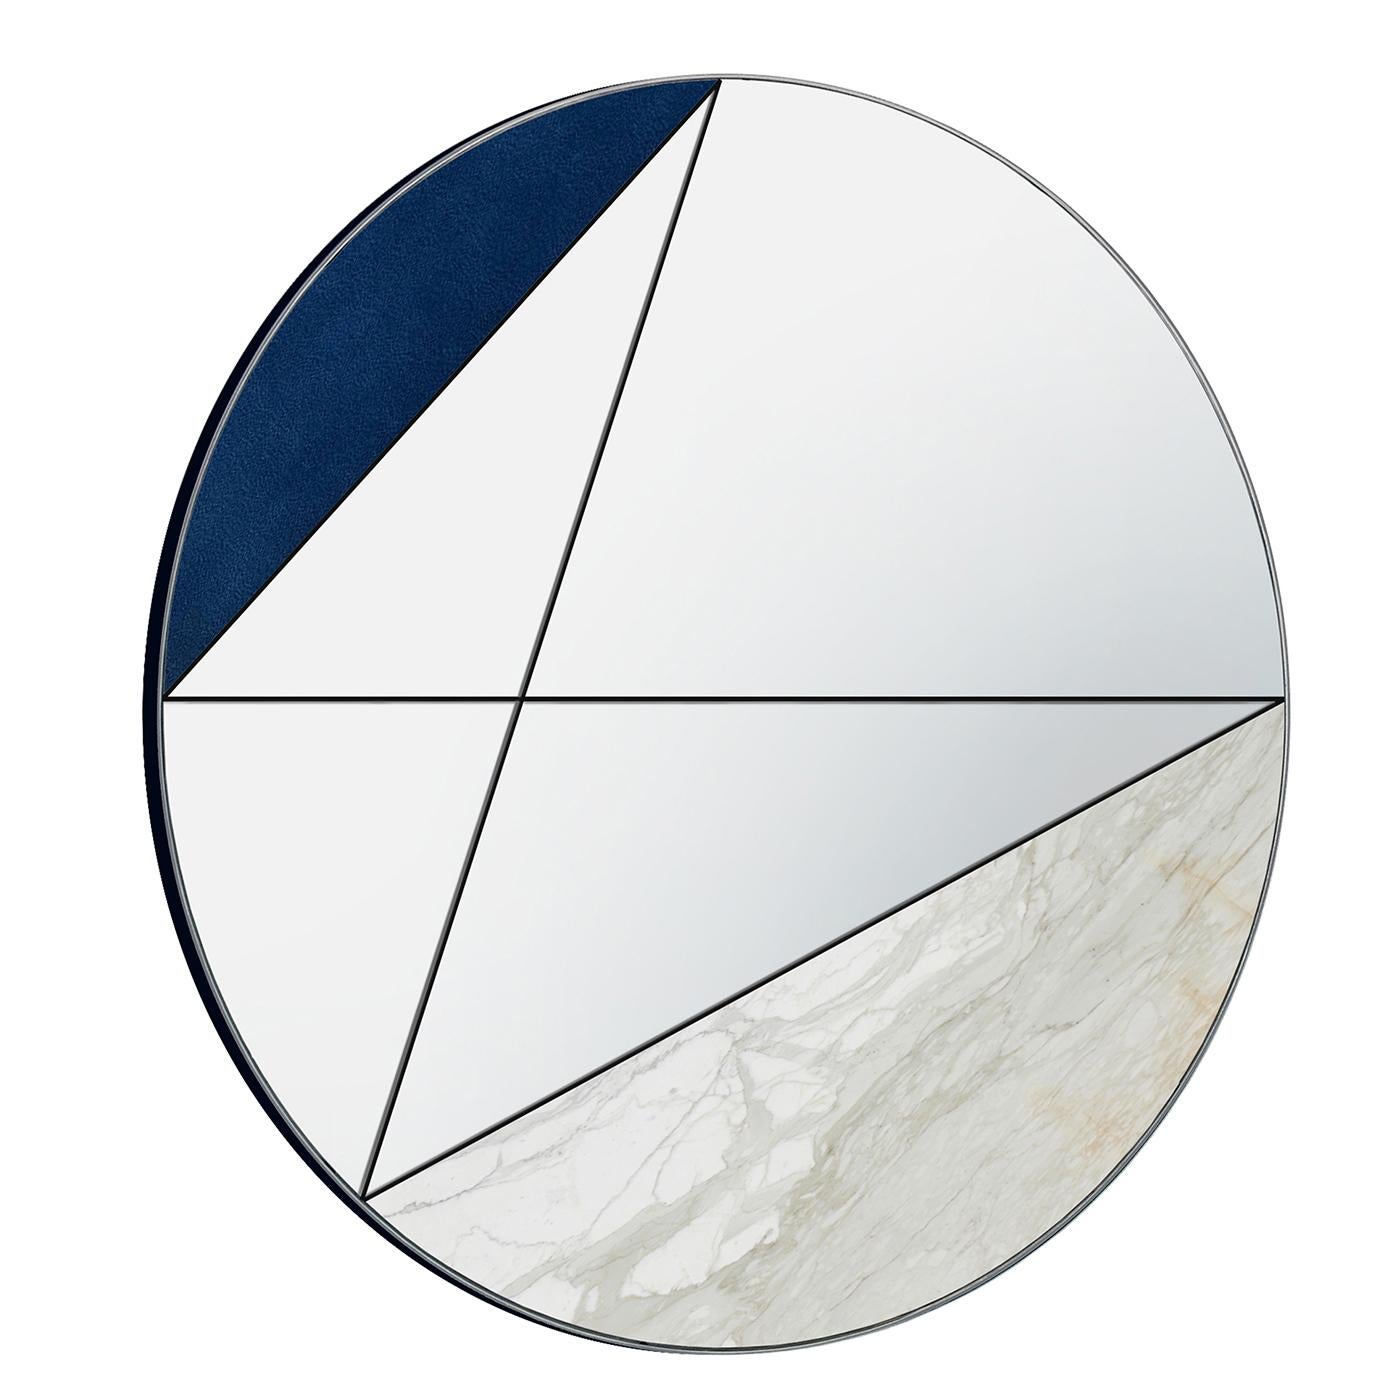 Der Spiegel Clepsydra I wird vollständig von Hand gefertigt, so dass kein Stück dem anderen gleicht. Er zeichnet sich durch eine einzigartige Kombination aus blauem Leder und Calacatta-Marmor aus. Vervollständigt wird der Spiegel durch die